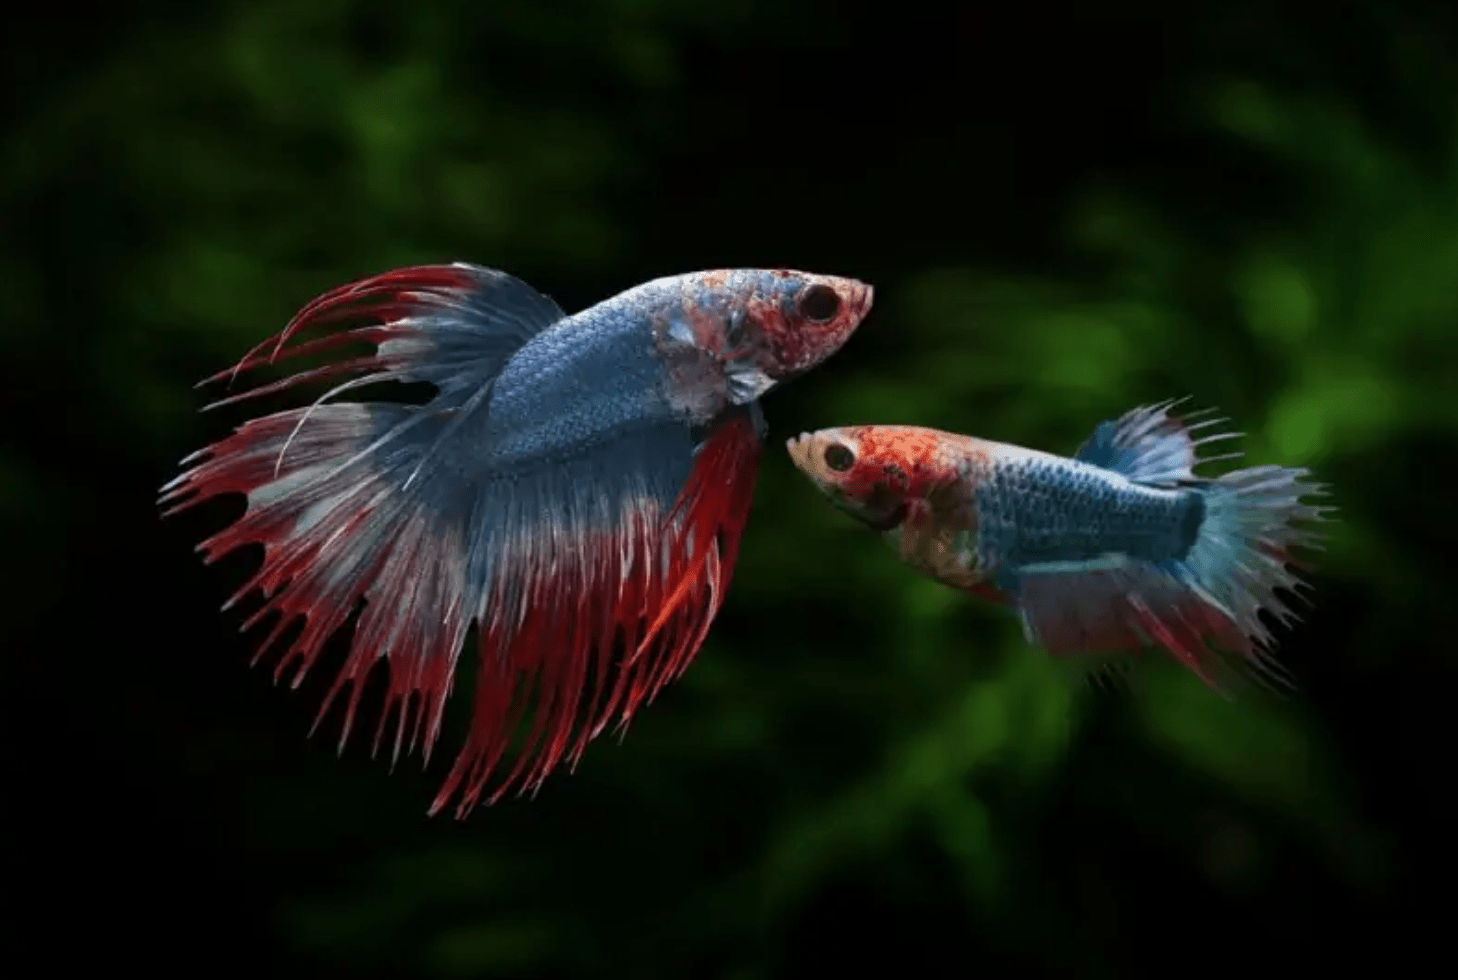 Os peixes Betta machos e fêmeas podem viver juntos?